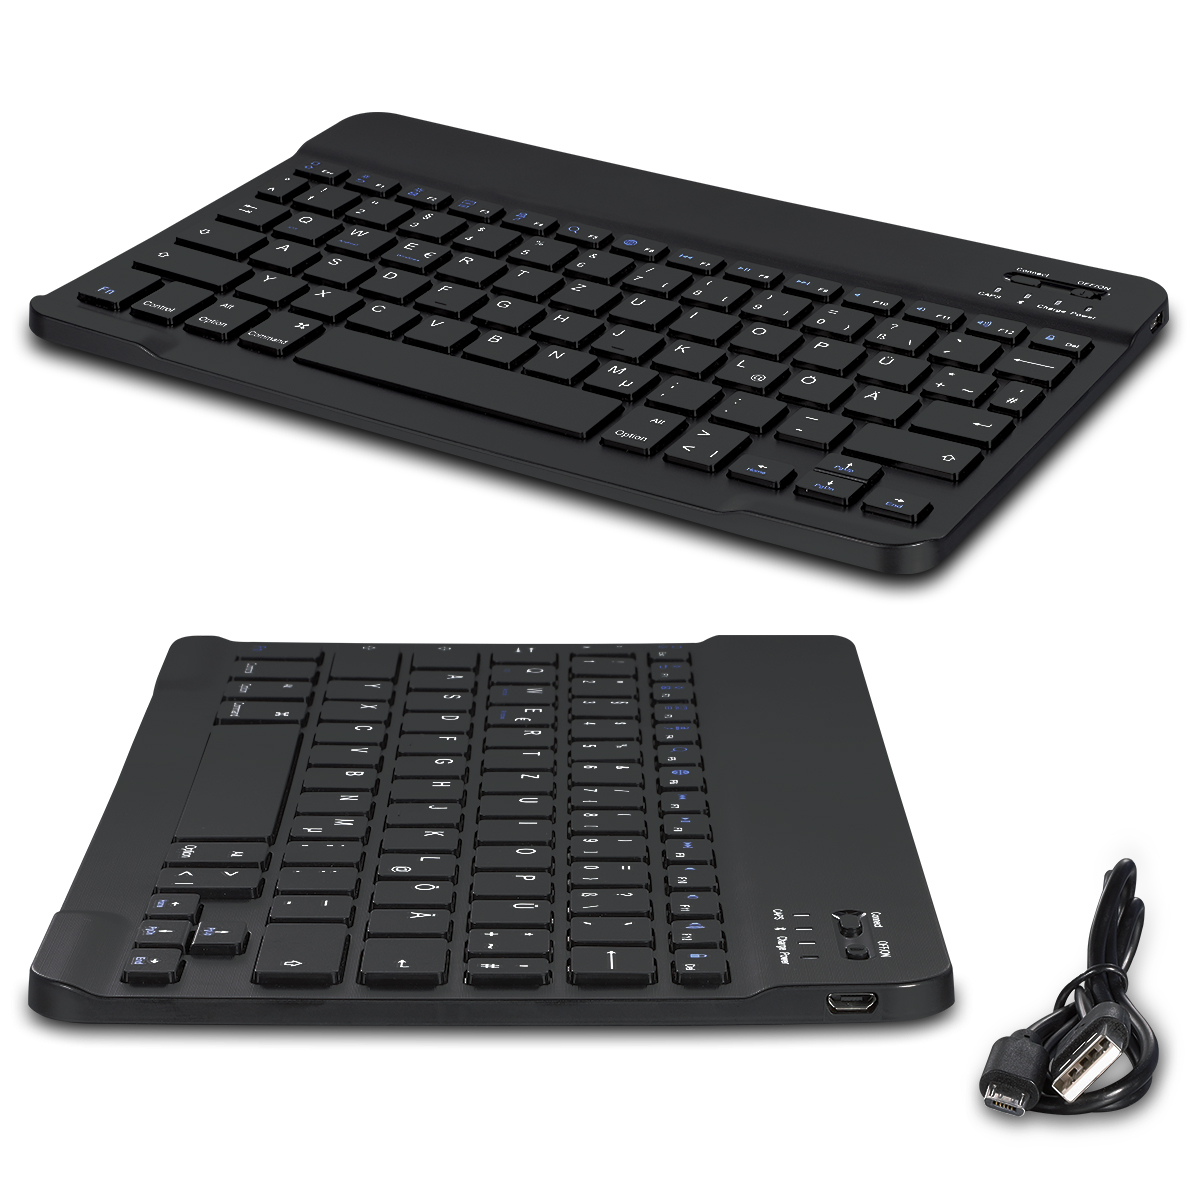 UC-Express Hülle Tasche Keyboard Case für Wortmann Terra Pad 1005 Tastatur Bluetooth QWERTZ Tastatur Standfunktion Cover 